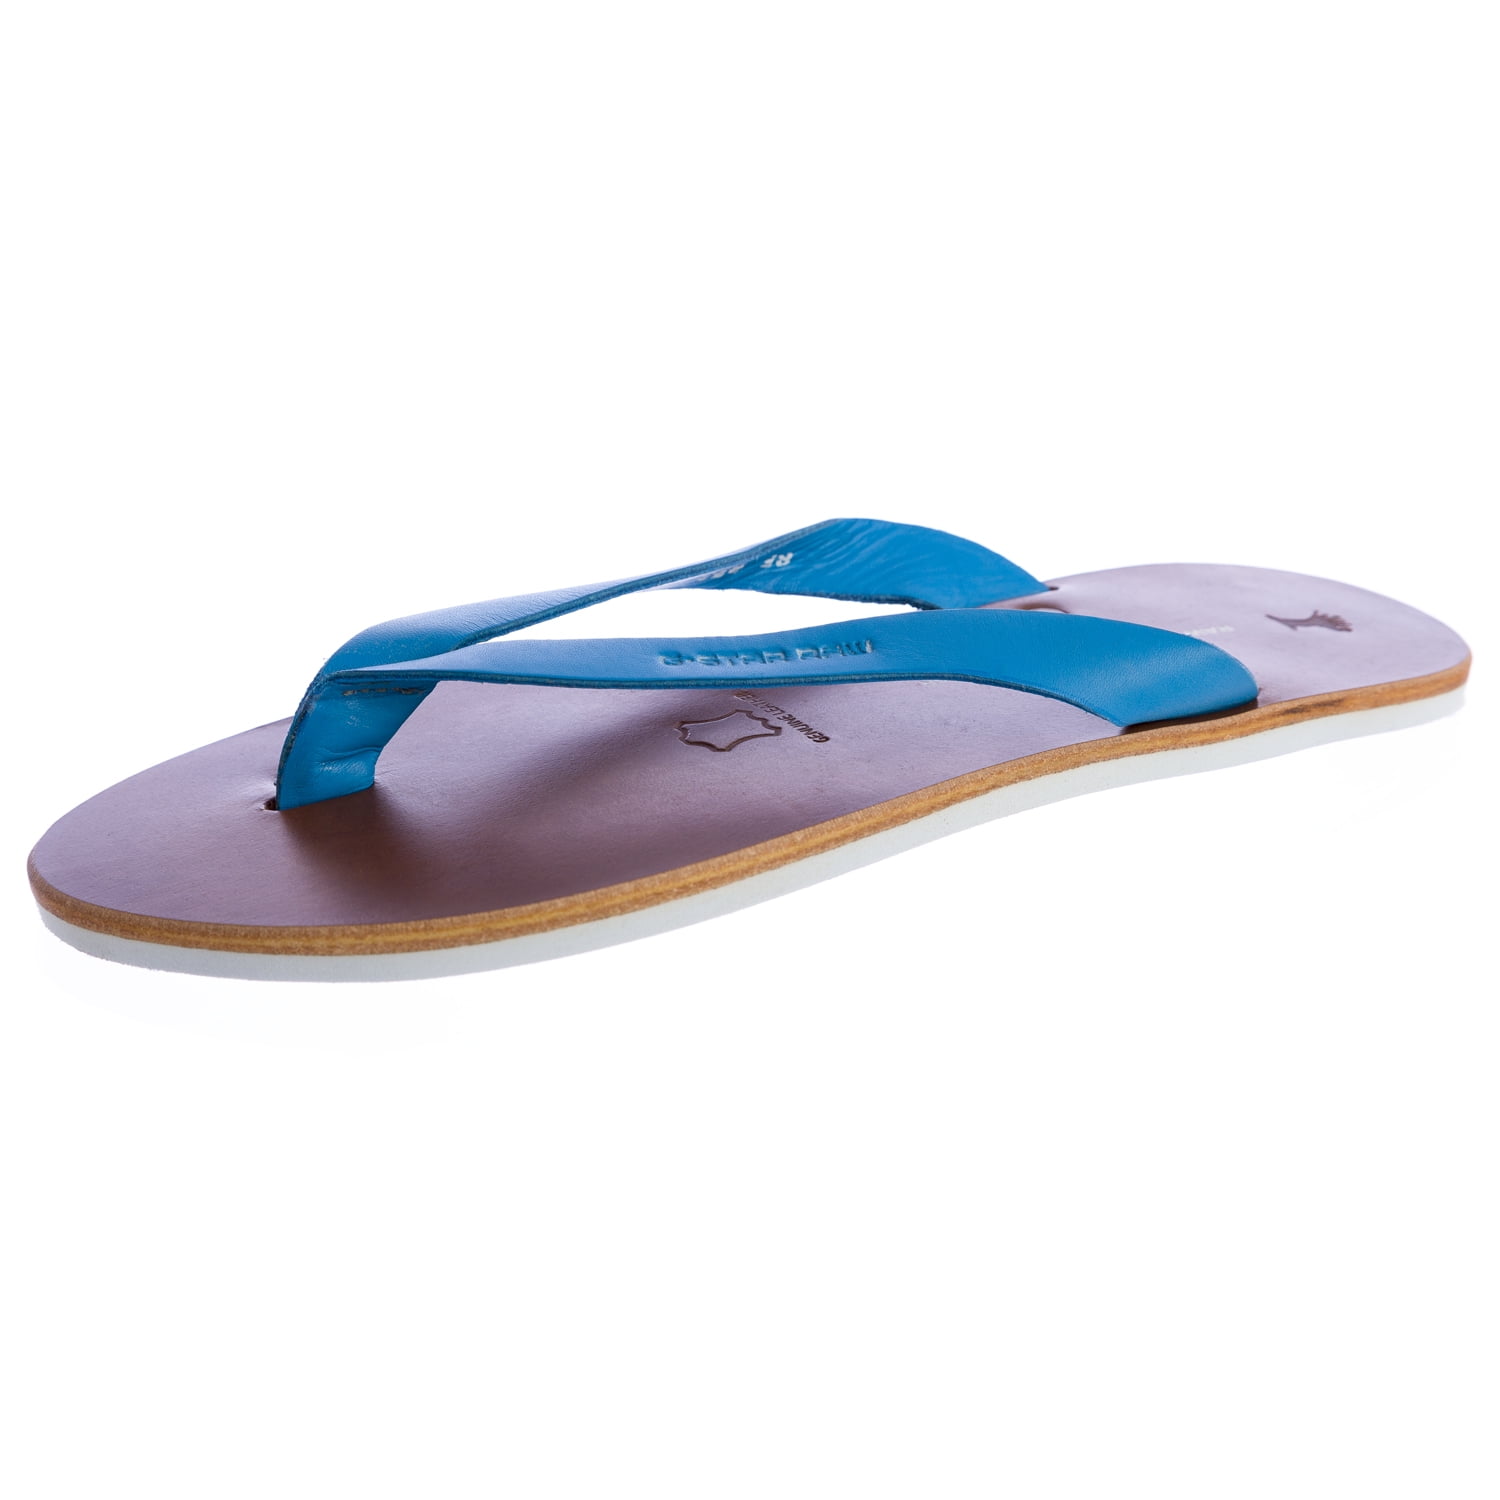 Buy Sandals for men SS 109 - Slippers for Men | Relaxo